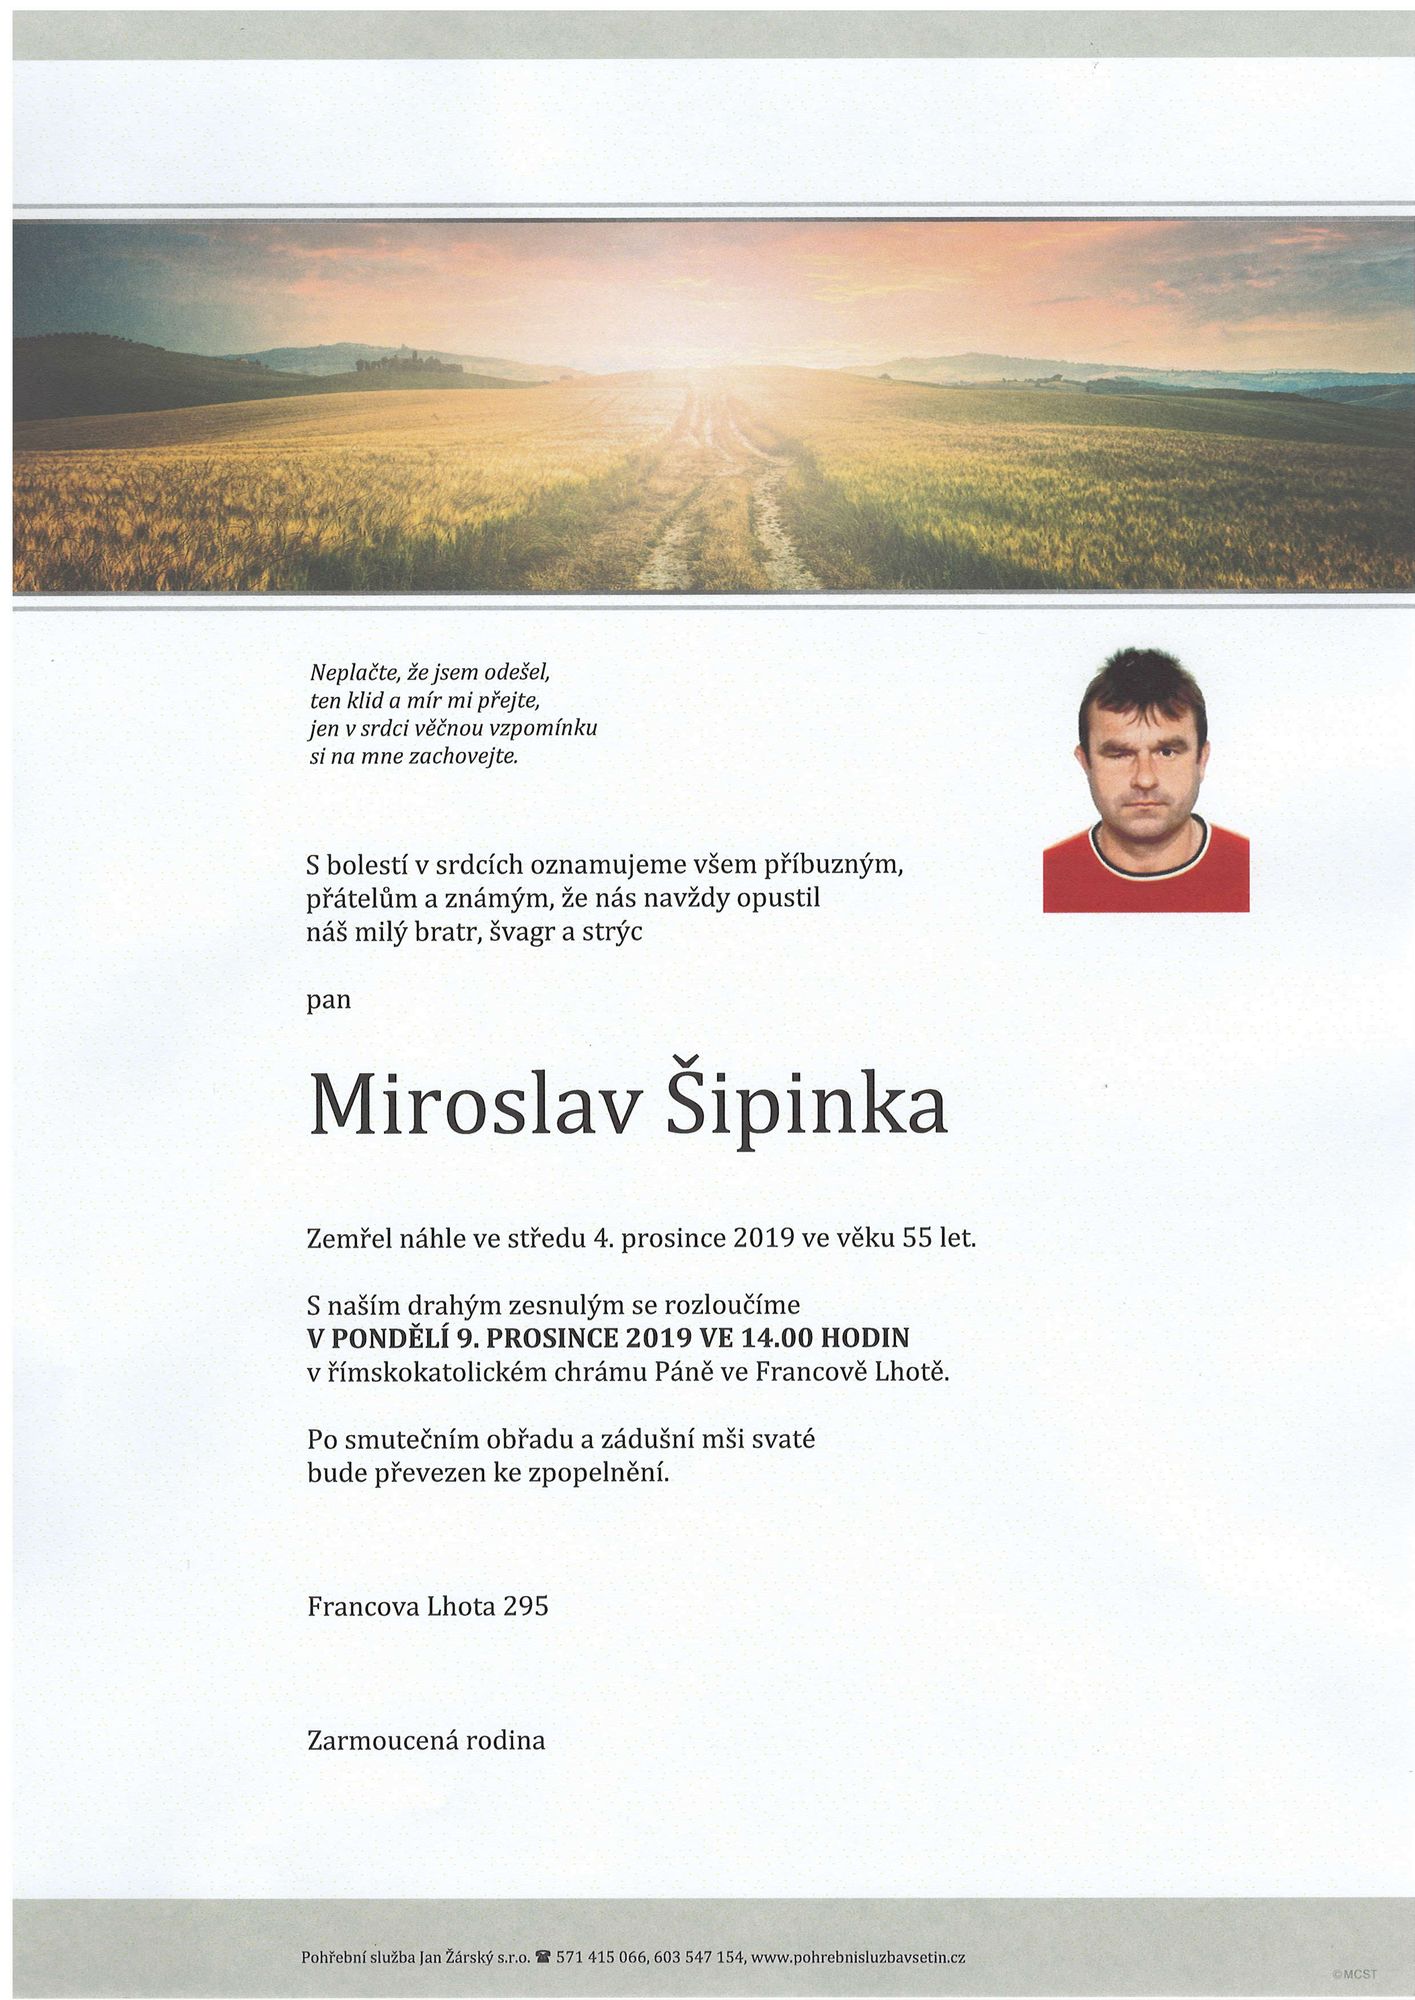 Miroslav Šipinka